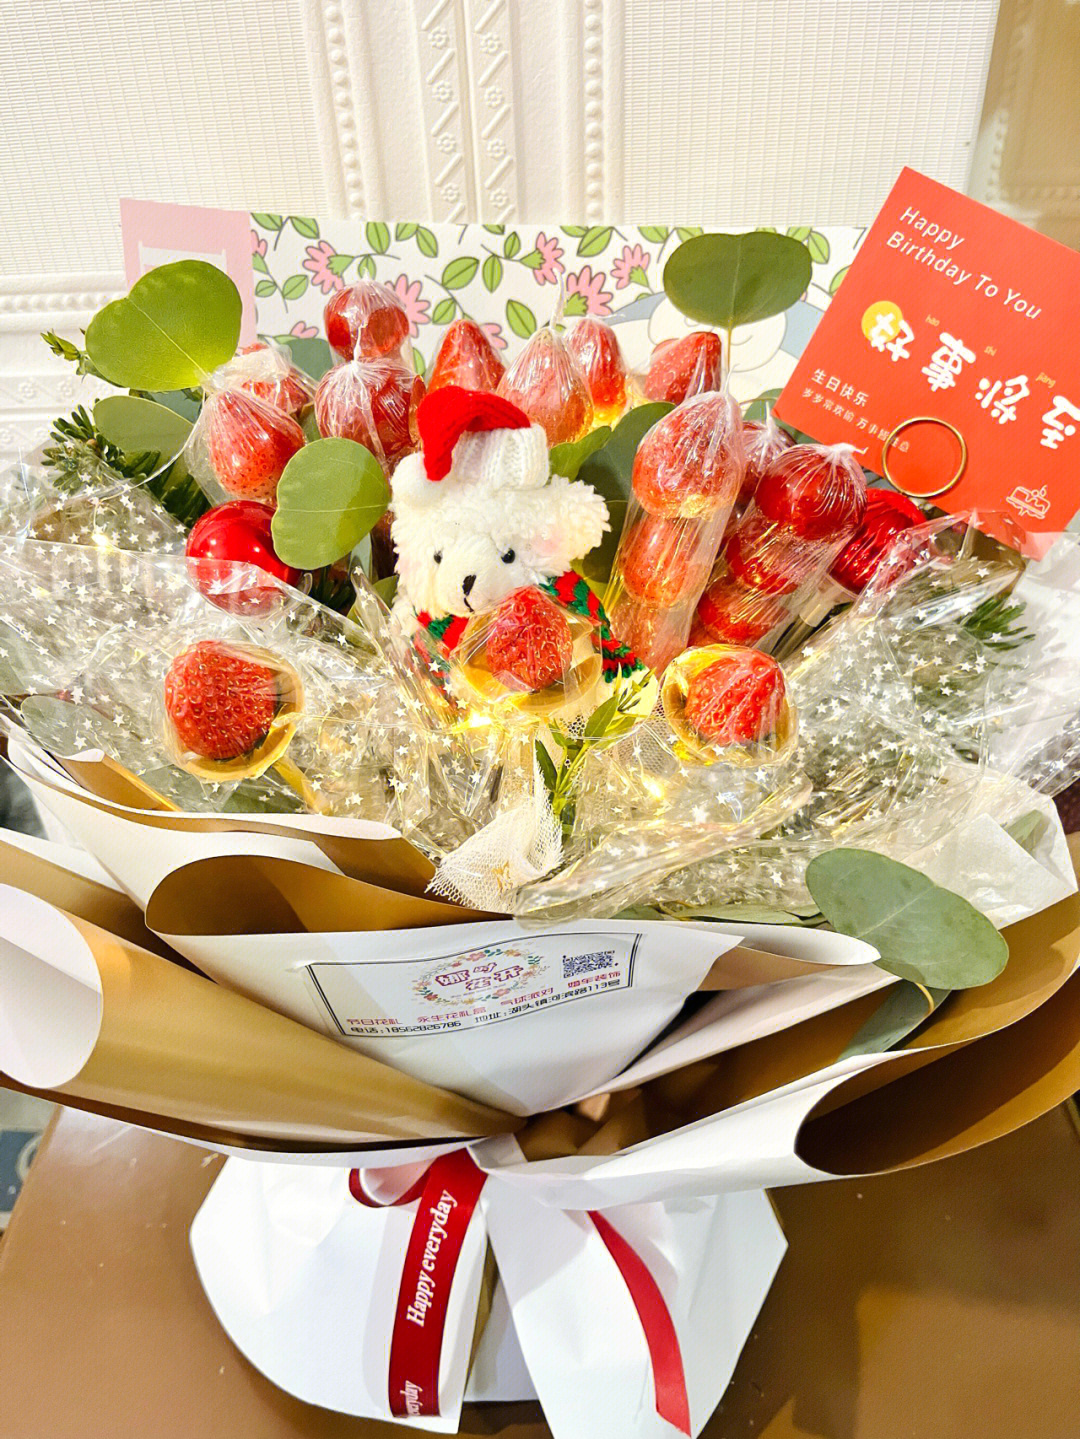 草莓冰糖葫芦花束图片